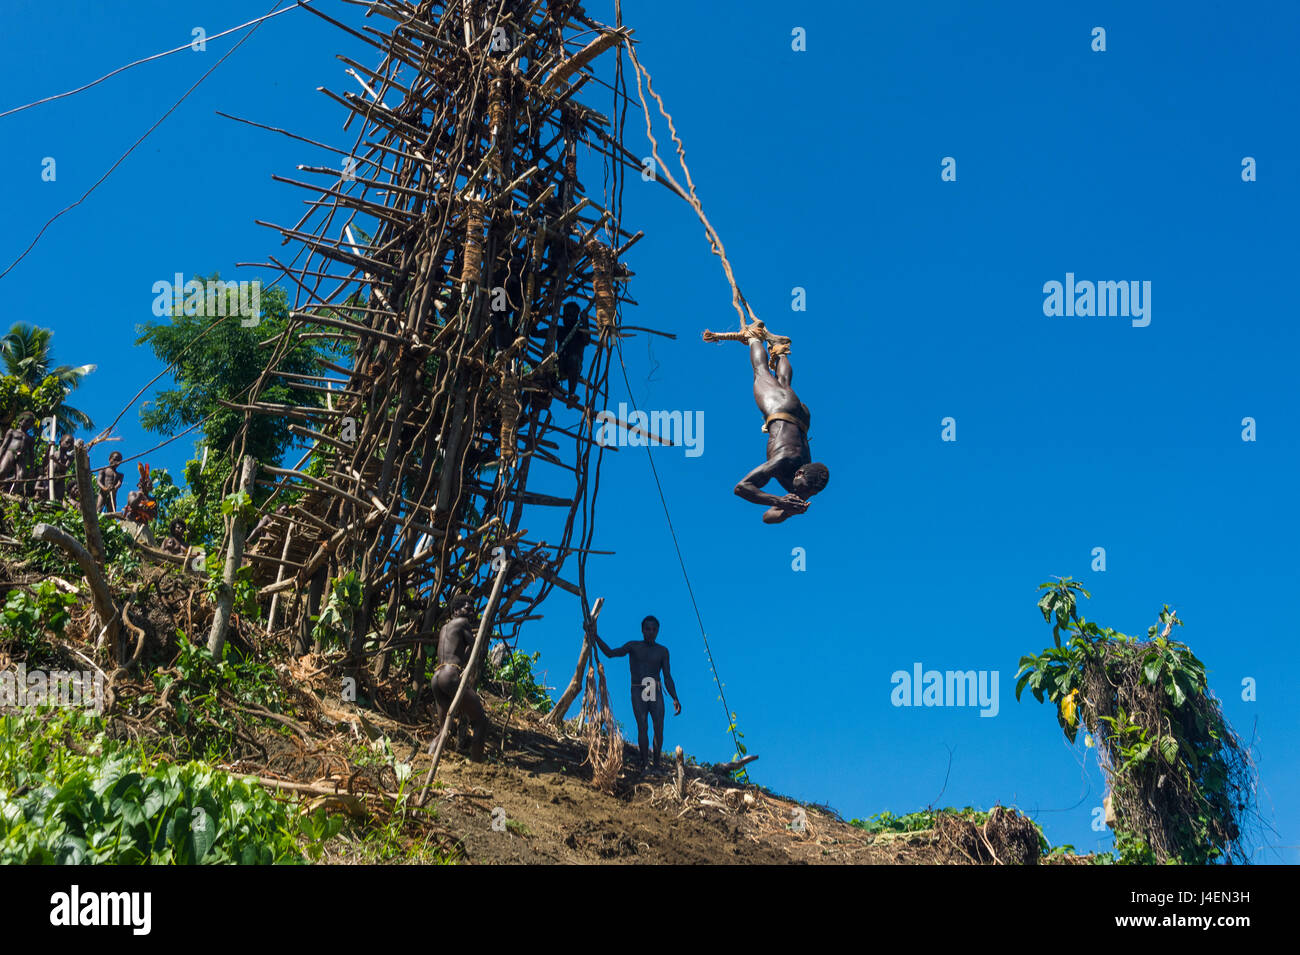 L'homme en sautant d'une tour de bambou, la Pentecôte, la Pentecôte, la plongée sous-marine du Pacifique, Vanuatu Banque D'Images